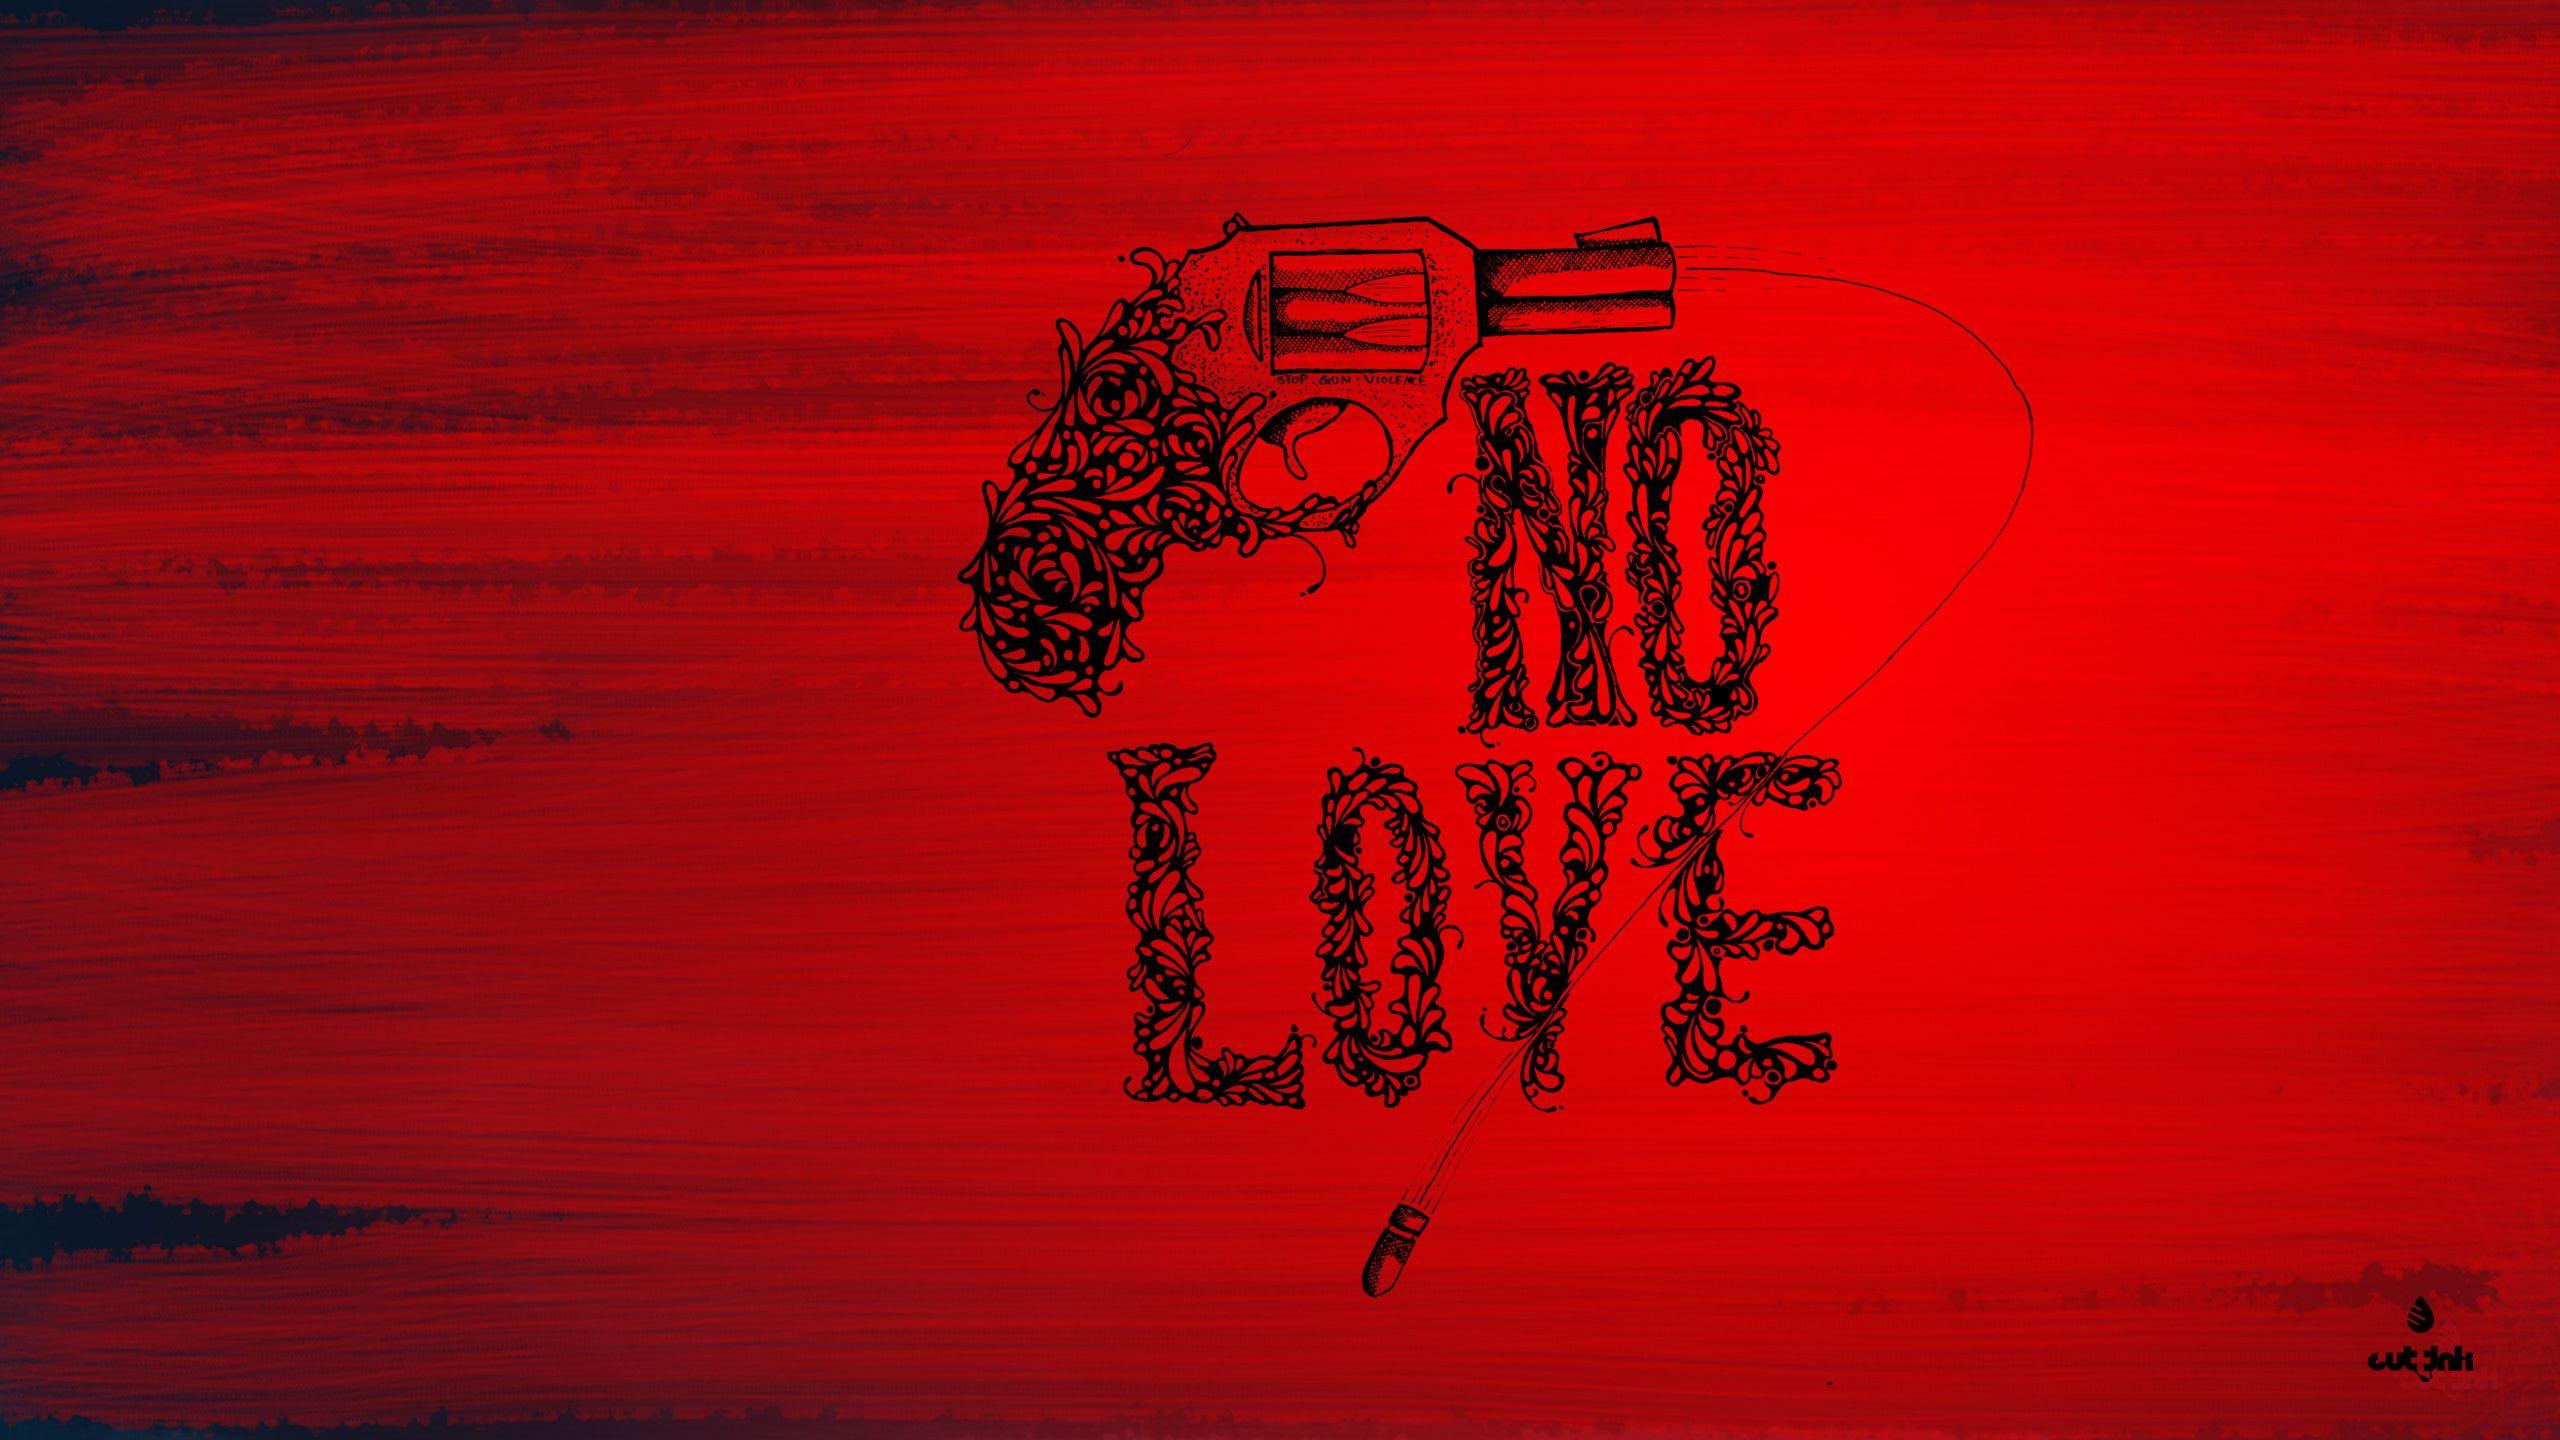 No Love August Alsina Lyrics wallpaper